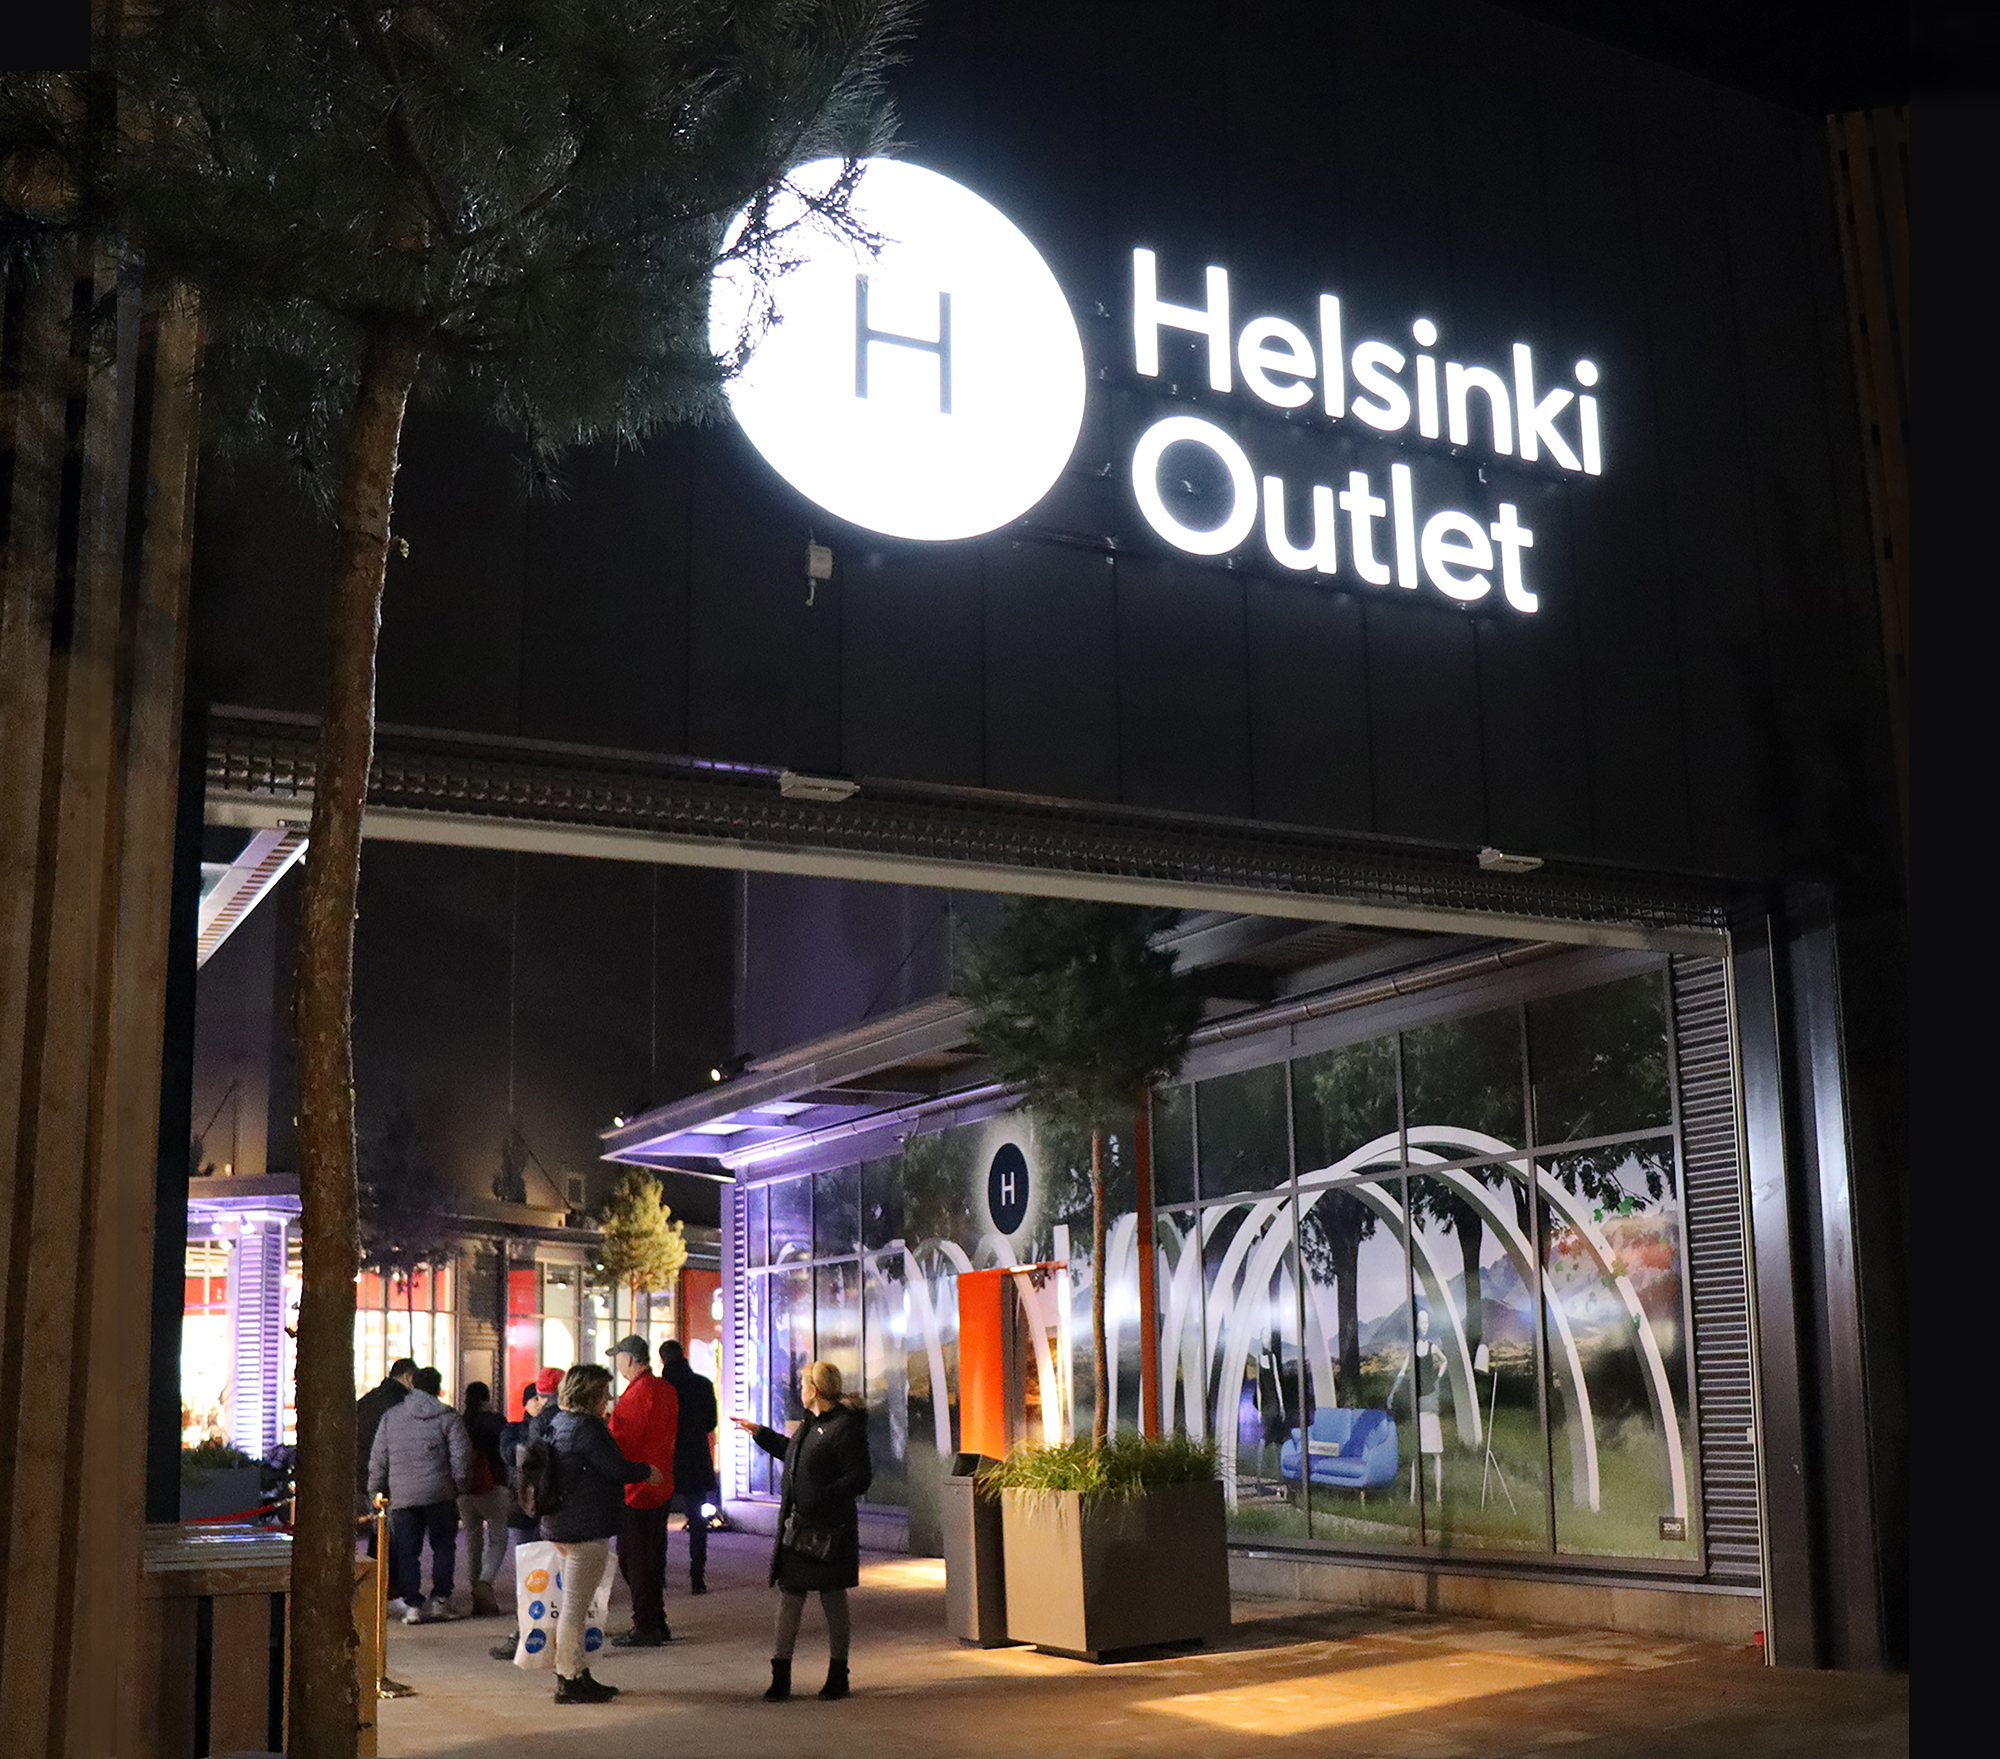 Louis Vuitton Helsinki Helsinki - Discovering Finland